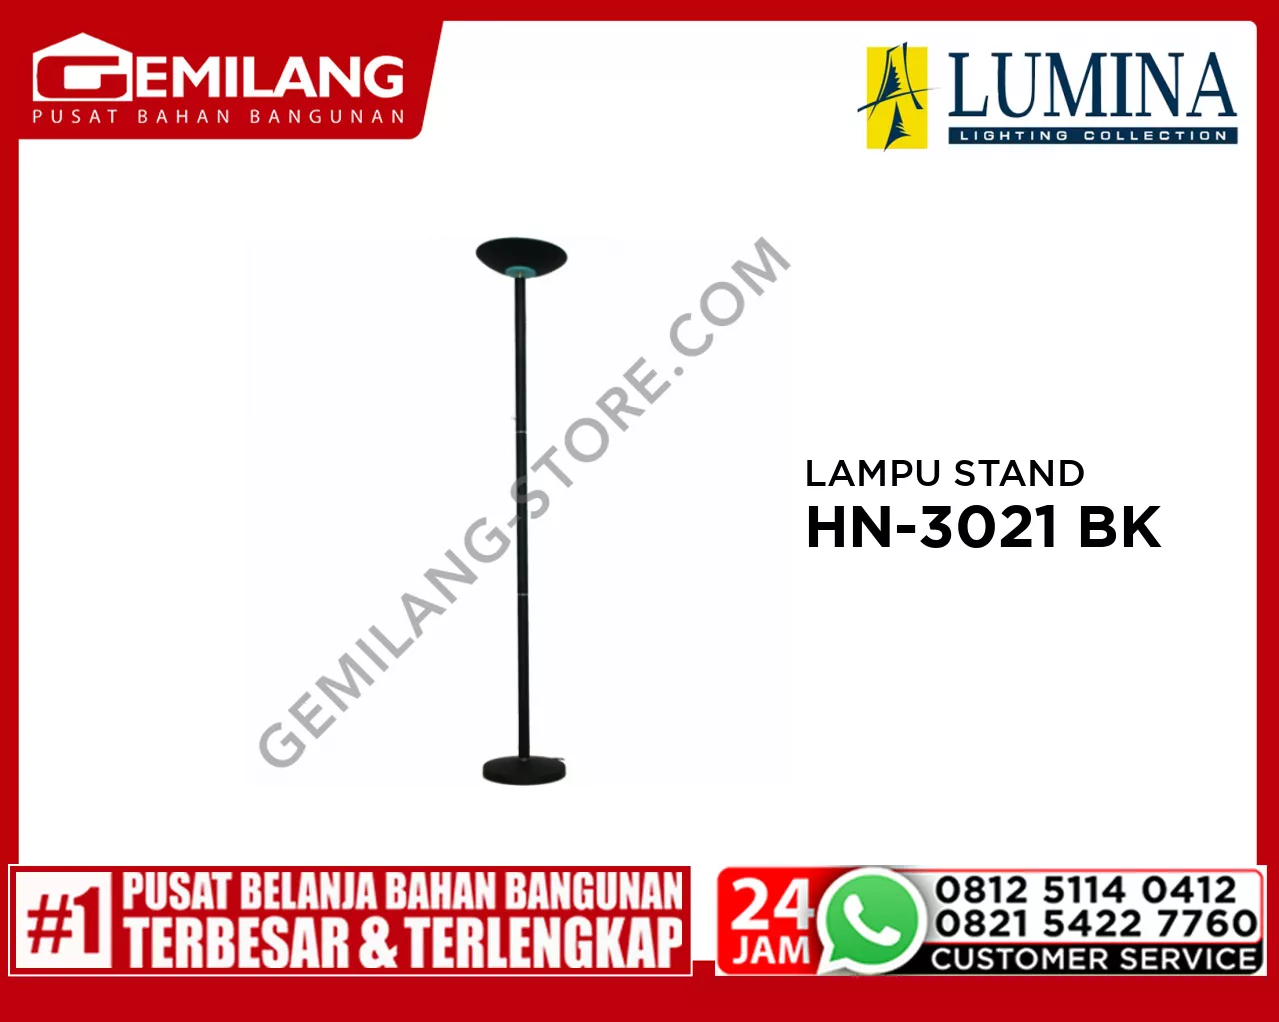 LAMPU STAND HN-3021 BK